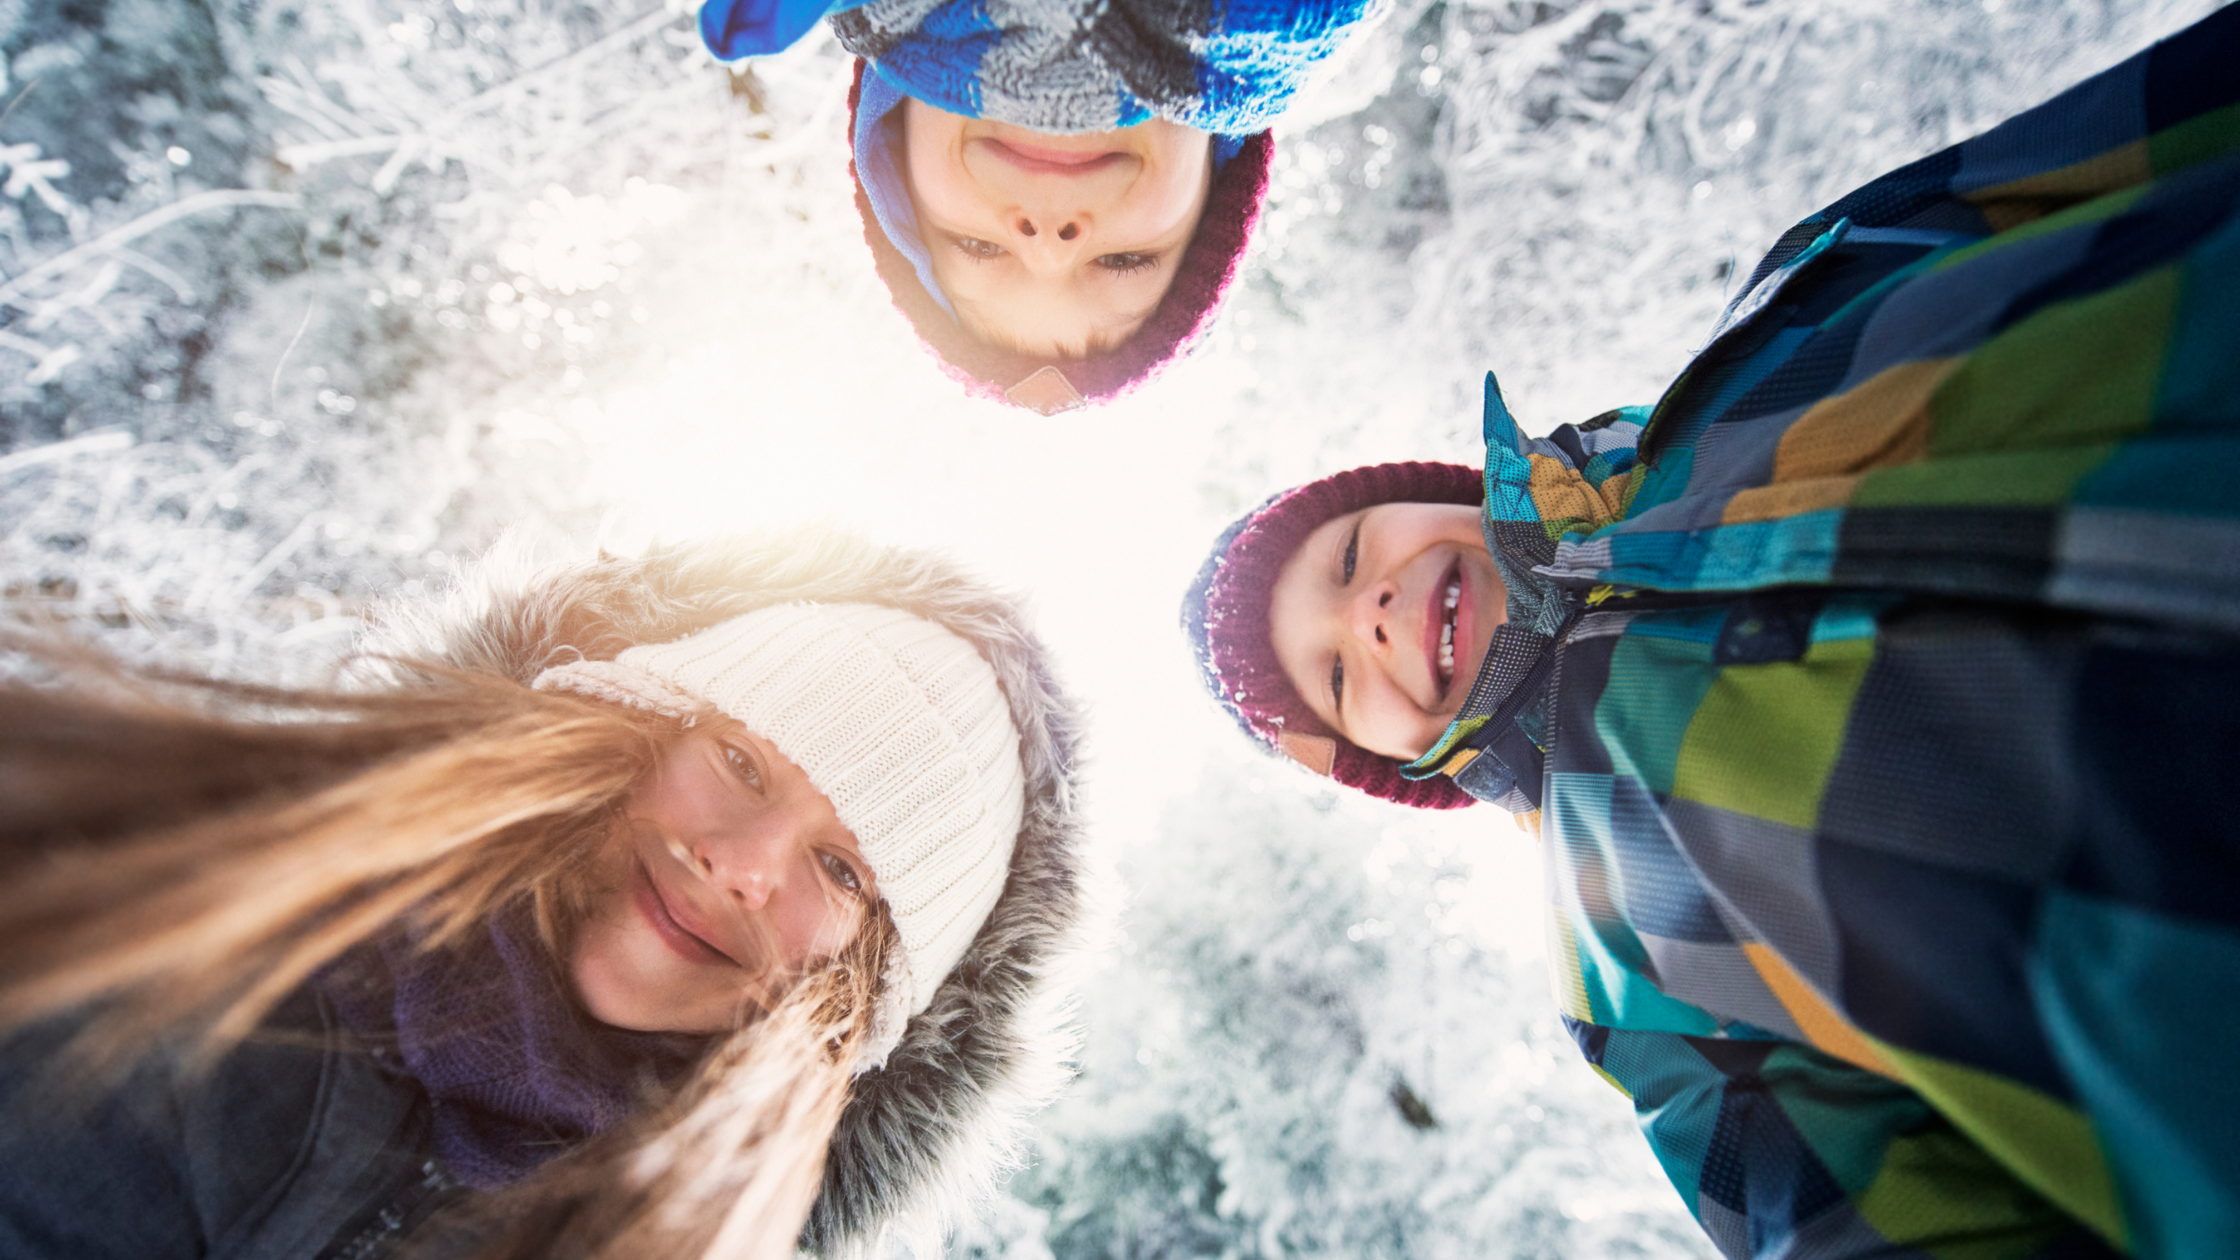 10+ Outdoor Winter Activities for Kids